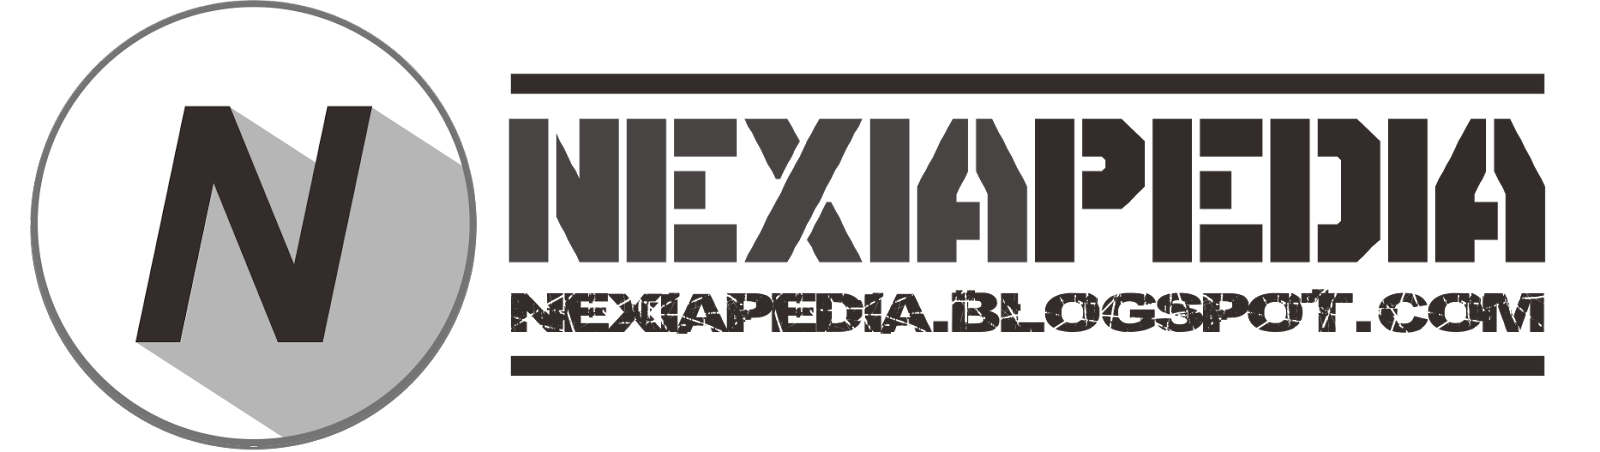 Nexiapedia